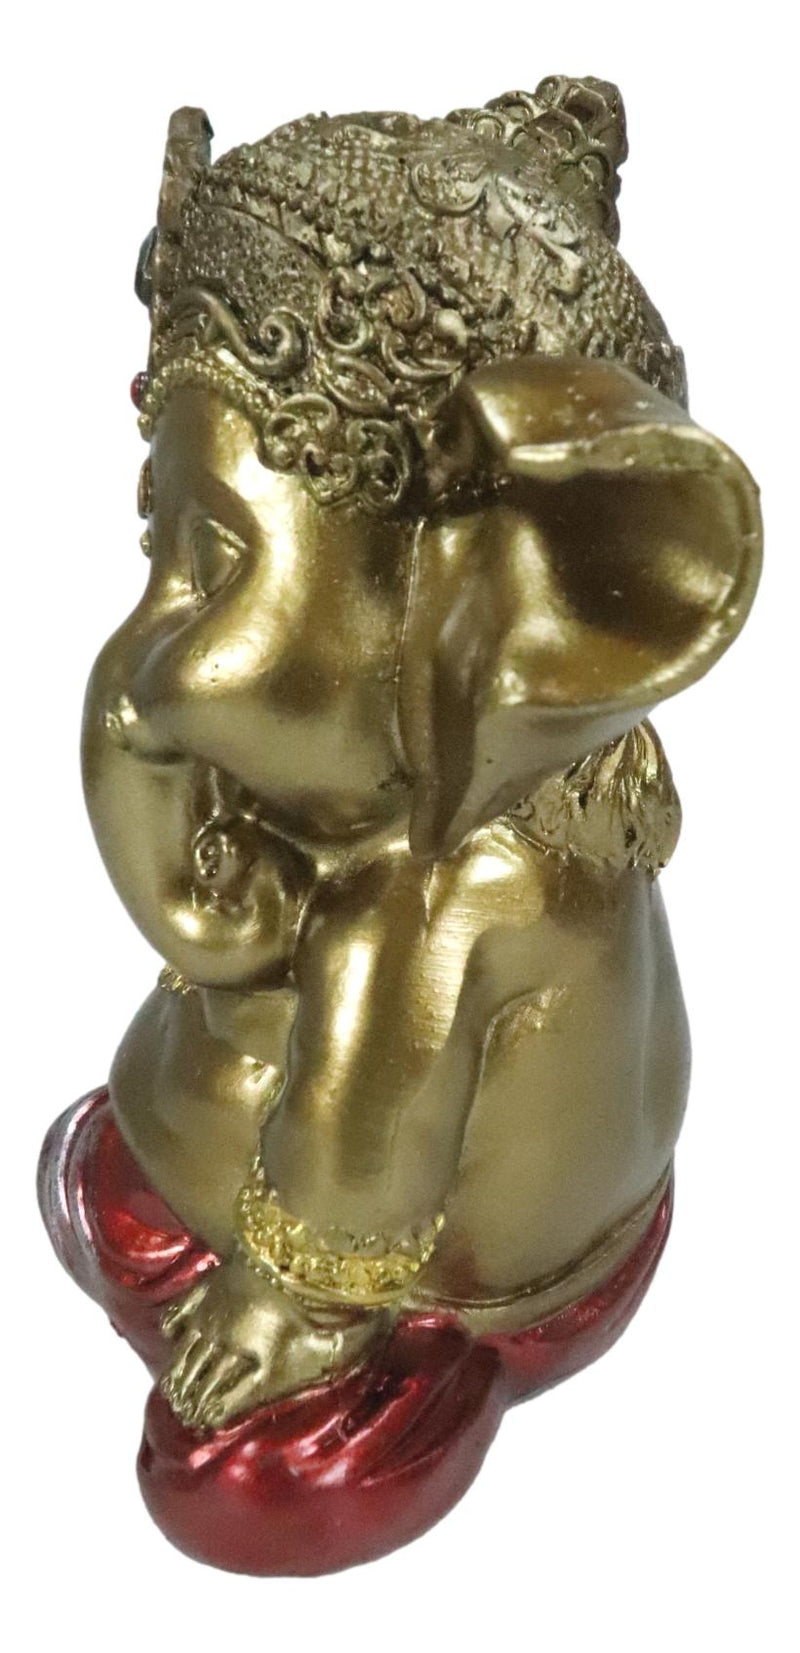 Vastu Hindu Elephant God Baby Ganesha Ganapati Holding Lotus Flower Figurine